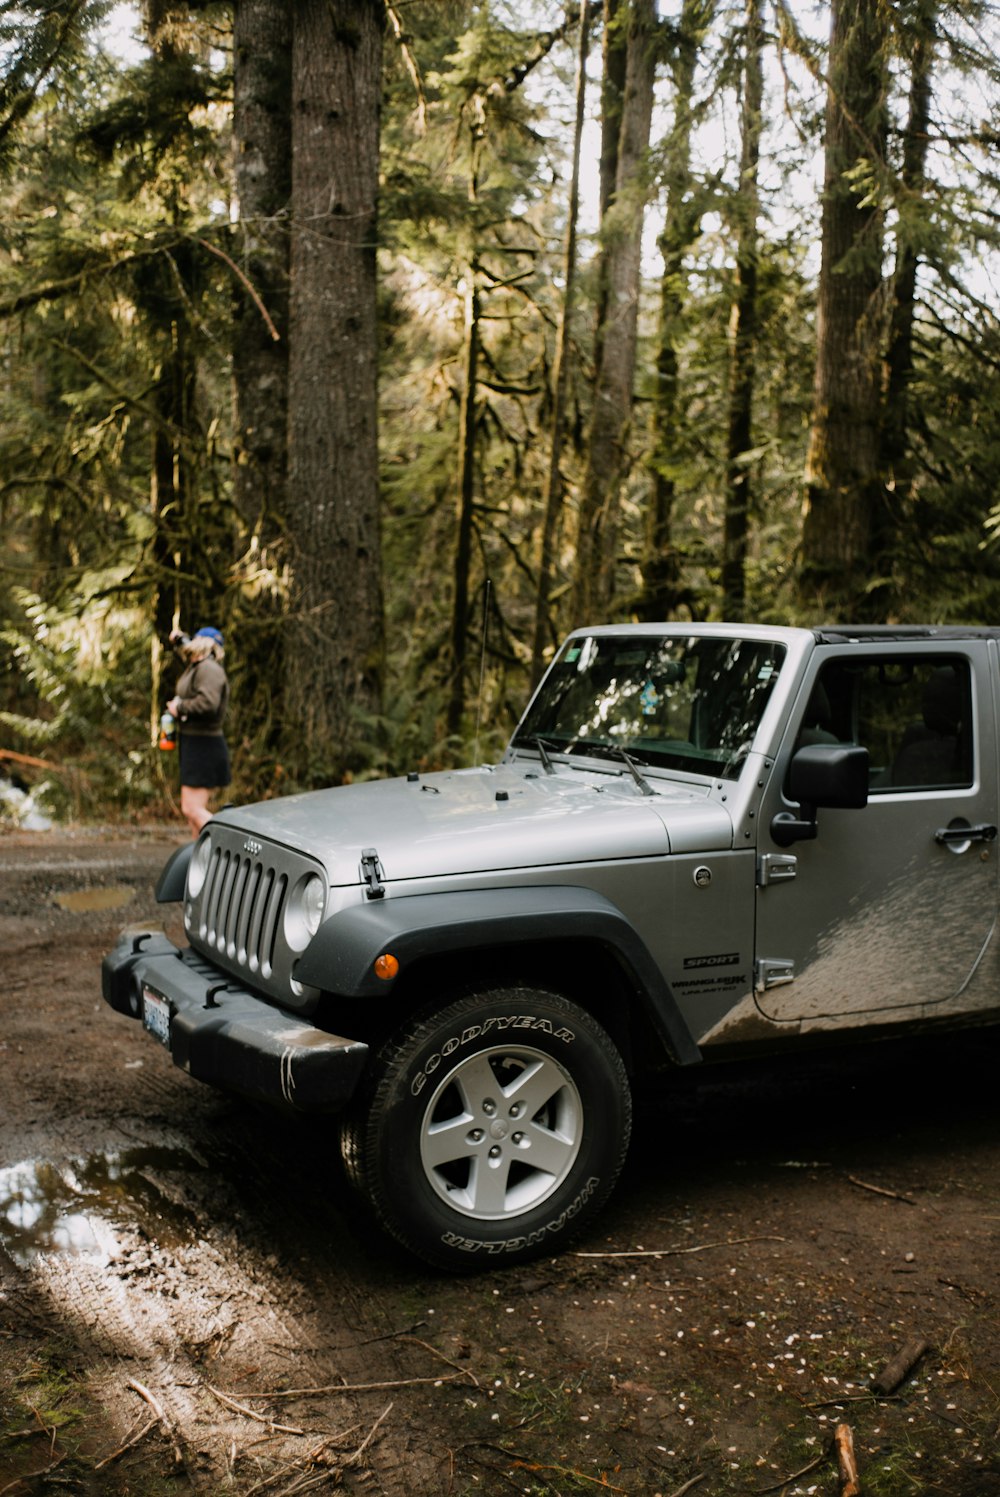 Grauer Jeep Wrangler tagsüber in der Nähe von Bäumen geparkt